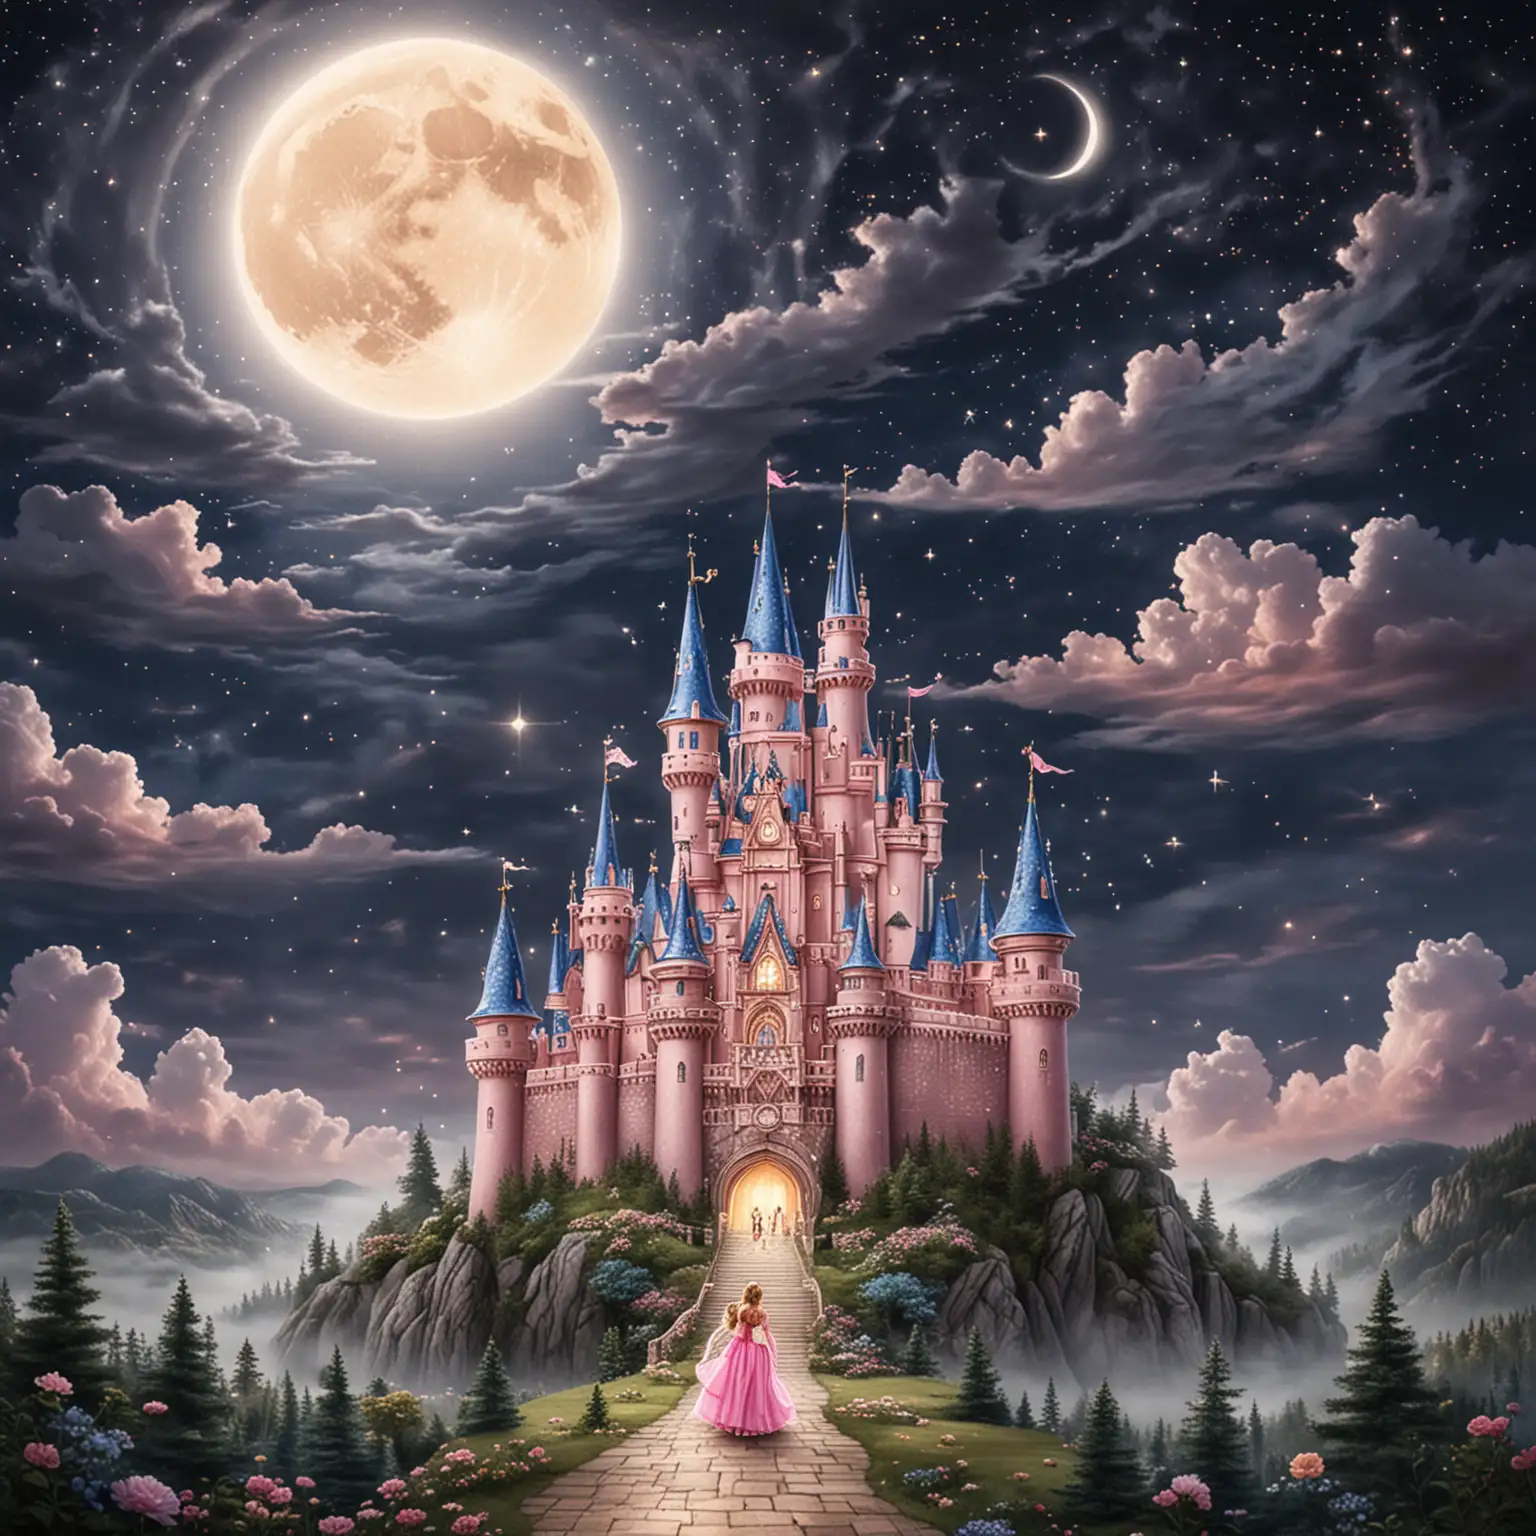 Princess-in-a-Moonlit-Castle